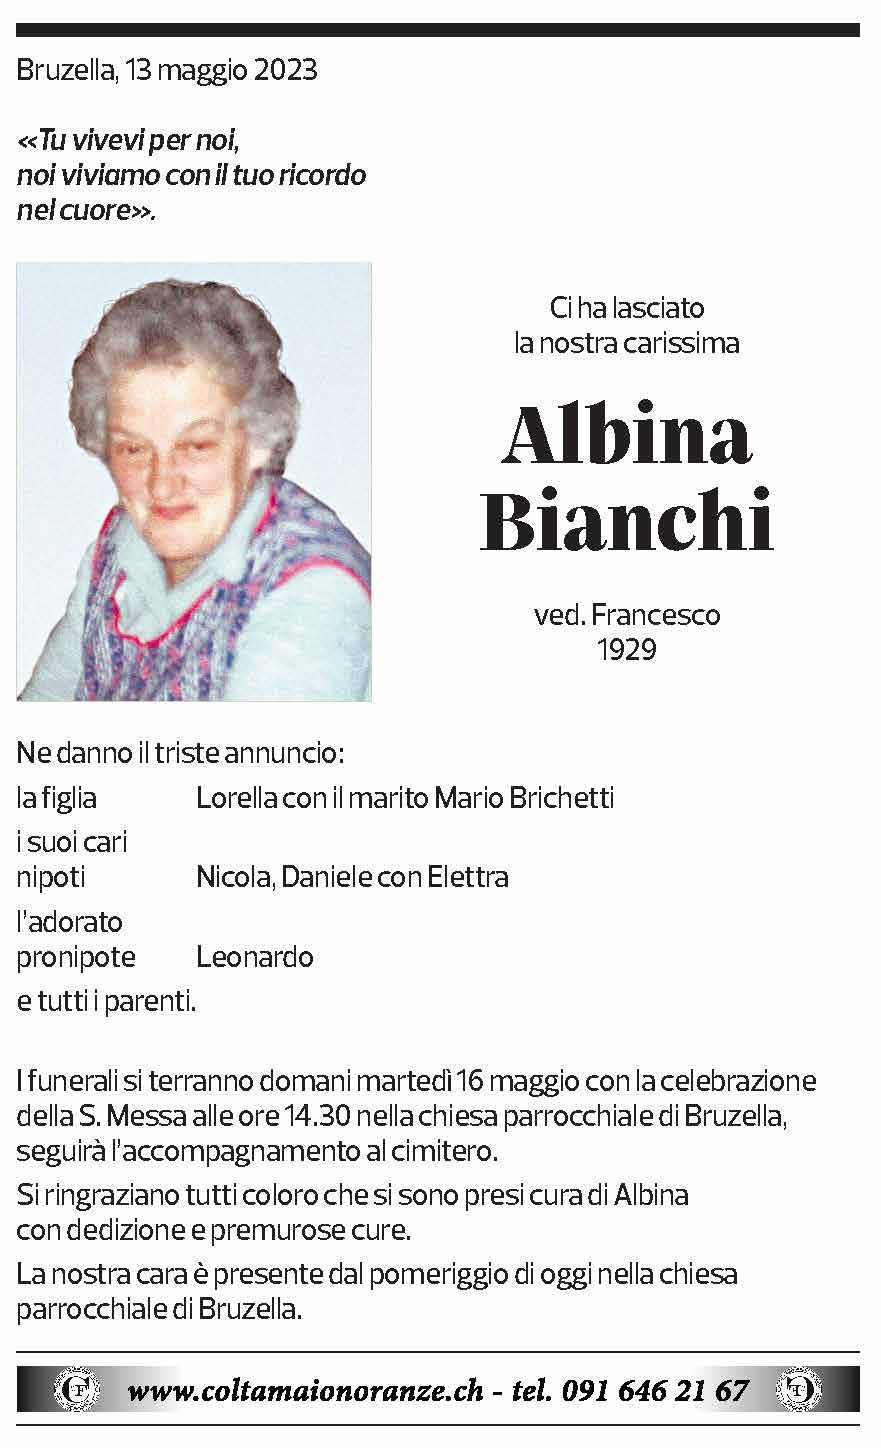 Annuncio funebre Albina Bianchi